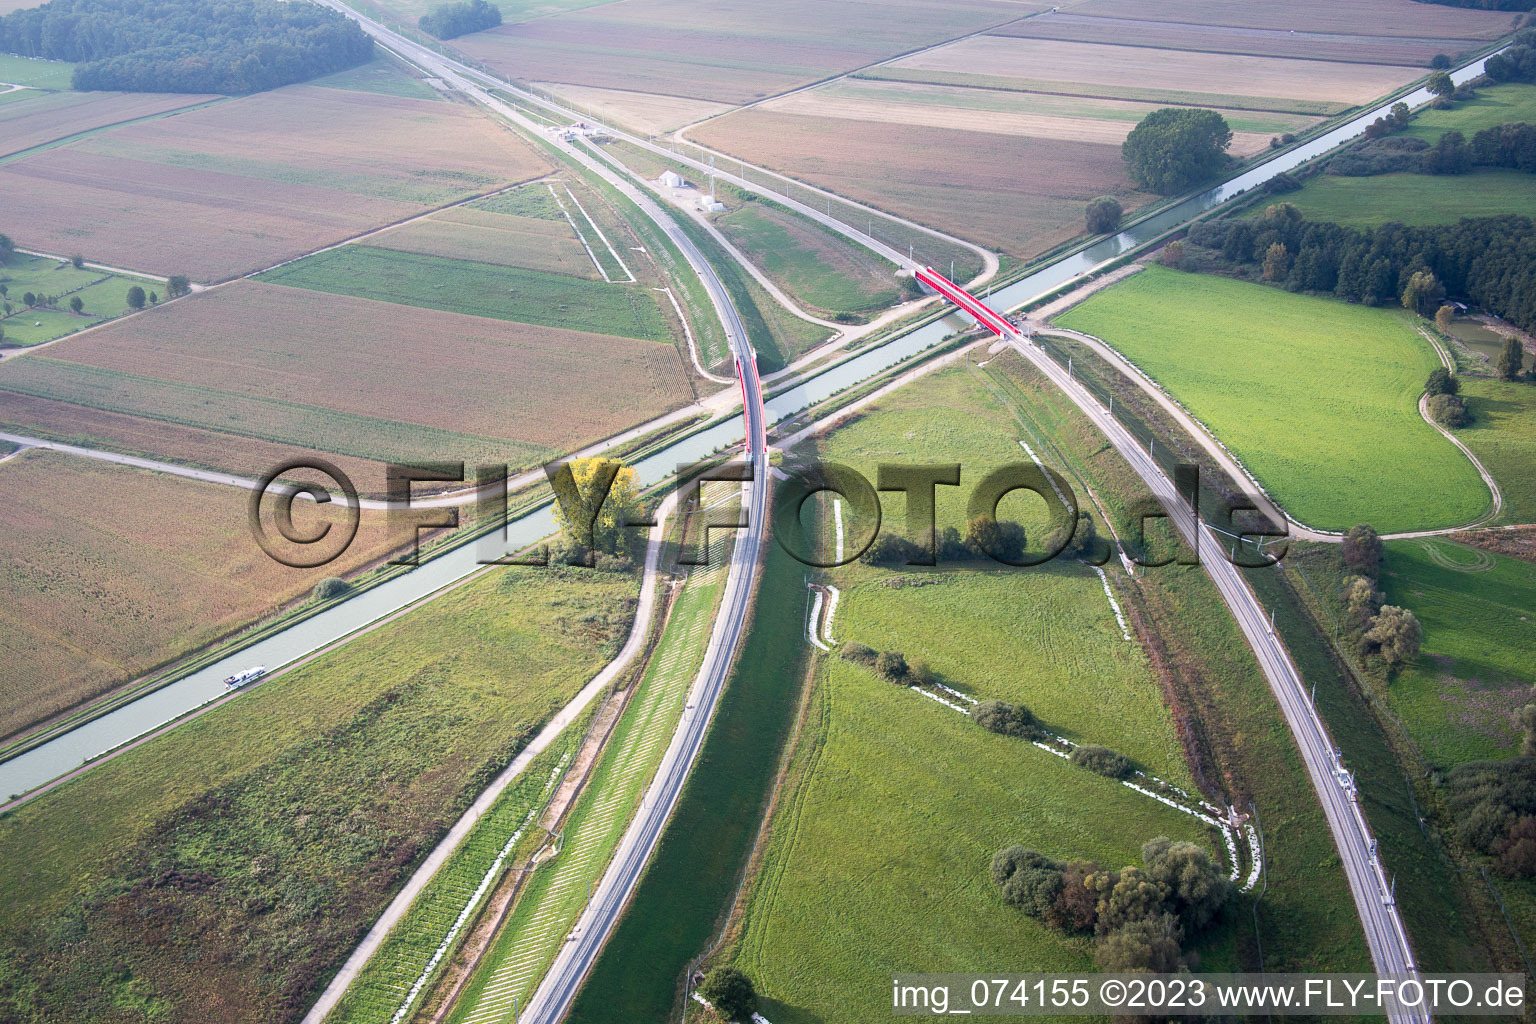 Photographie aérienne de Chantier du nouveau viaduc de l'ouvrage d'art du pont ferroviaire destiné au tracé des voies ferrées sur le canal Marne-Rhin à Eckwersheim dans le département Bas Rhin, France